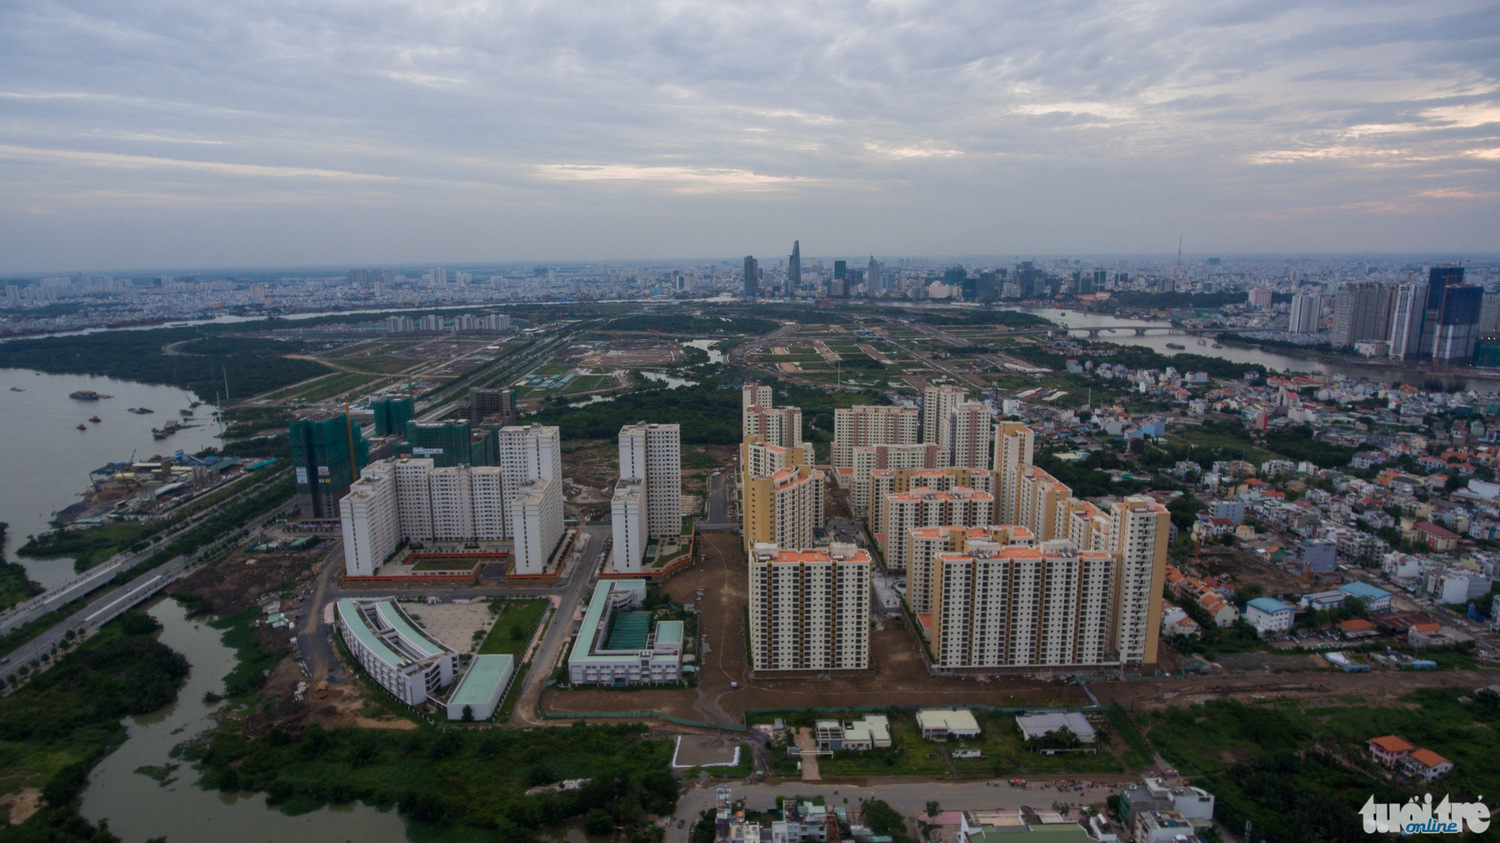 Một khu chung cư với hàng ngàn căn hộ đã hoàn thiện đưa vào sử dụng ở khu đô thị mới Thủ Thiêm - Thuận Thắng